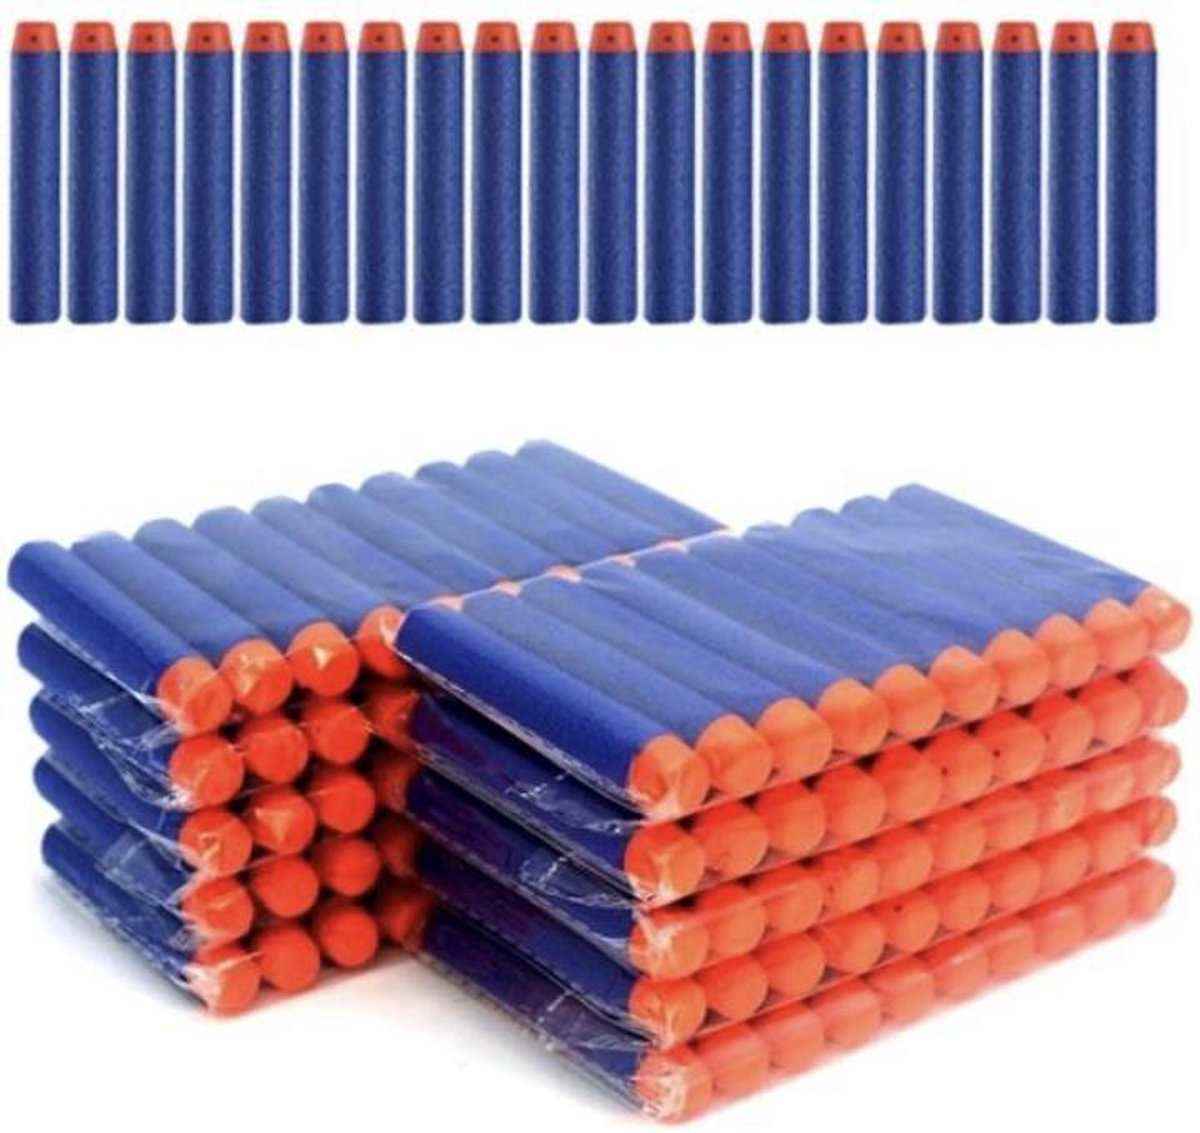 150 Pijltjes/Darts/Bullets geschikt voor Nerf Blasters - Speelgoedblaster pijltjes Blauw - Merkloos